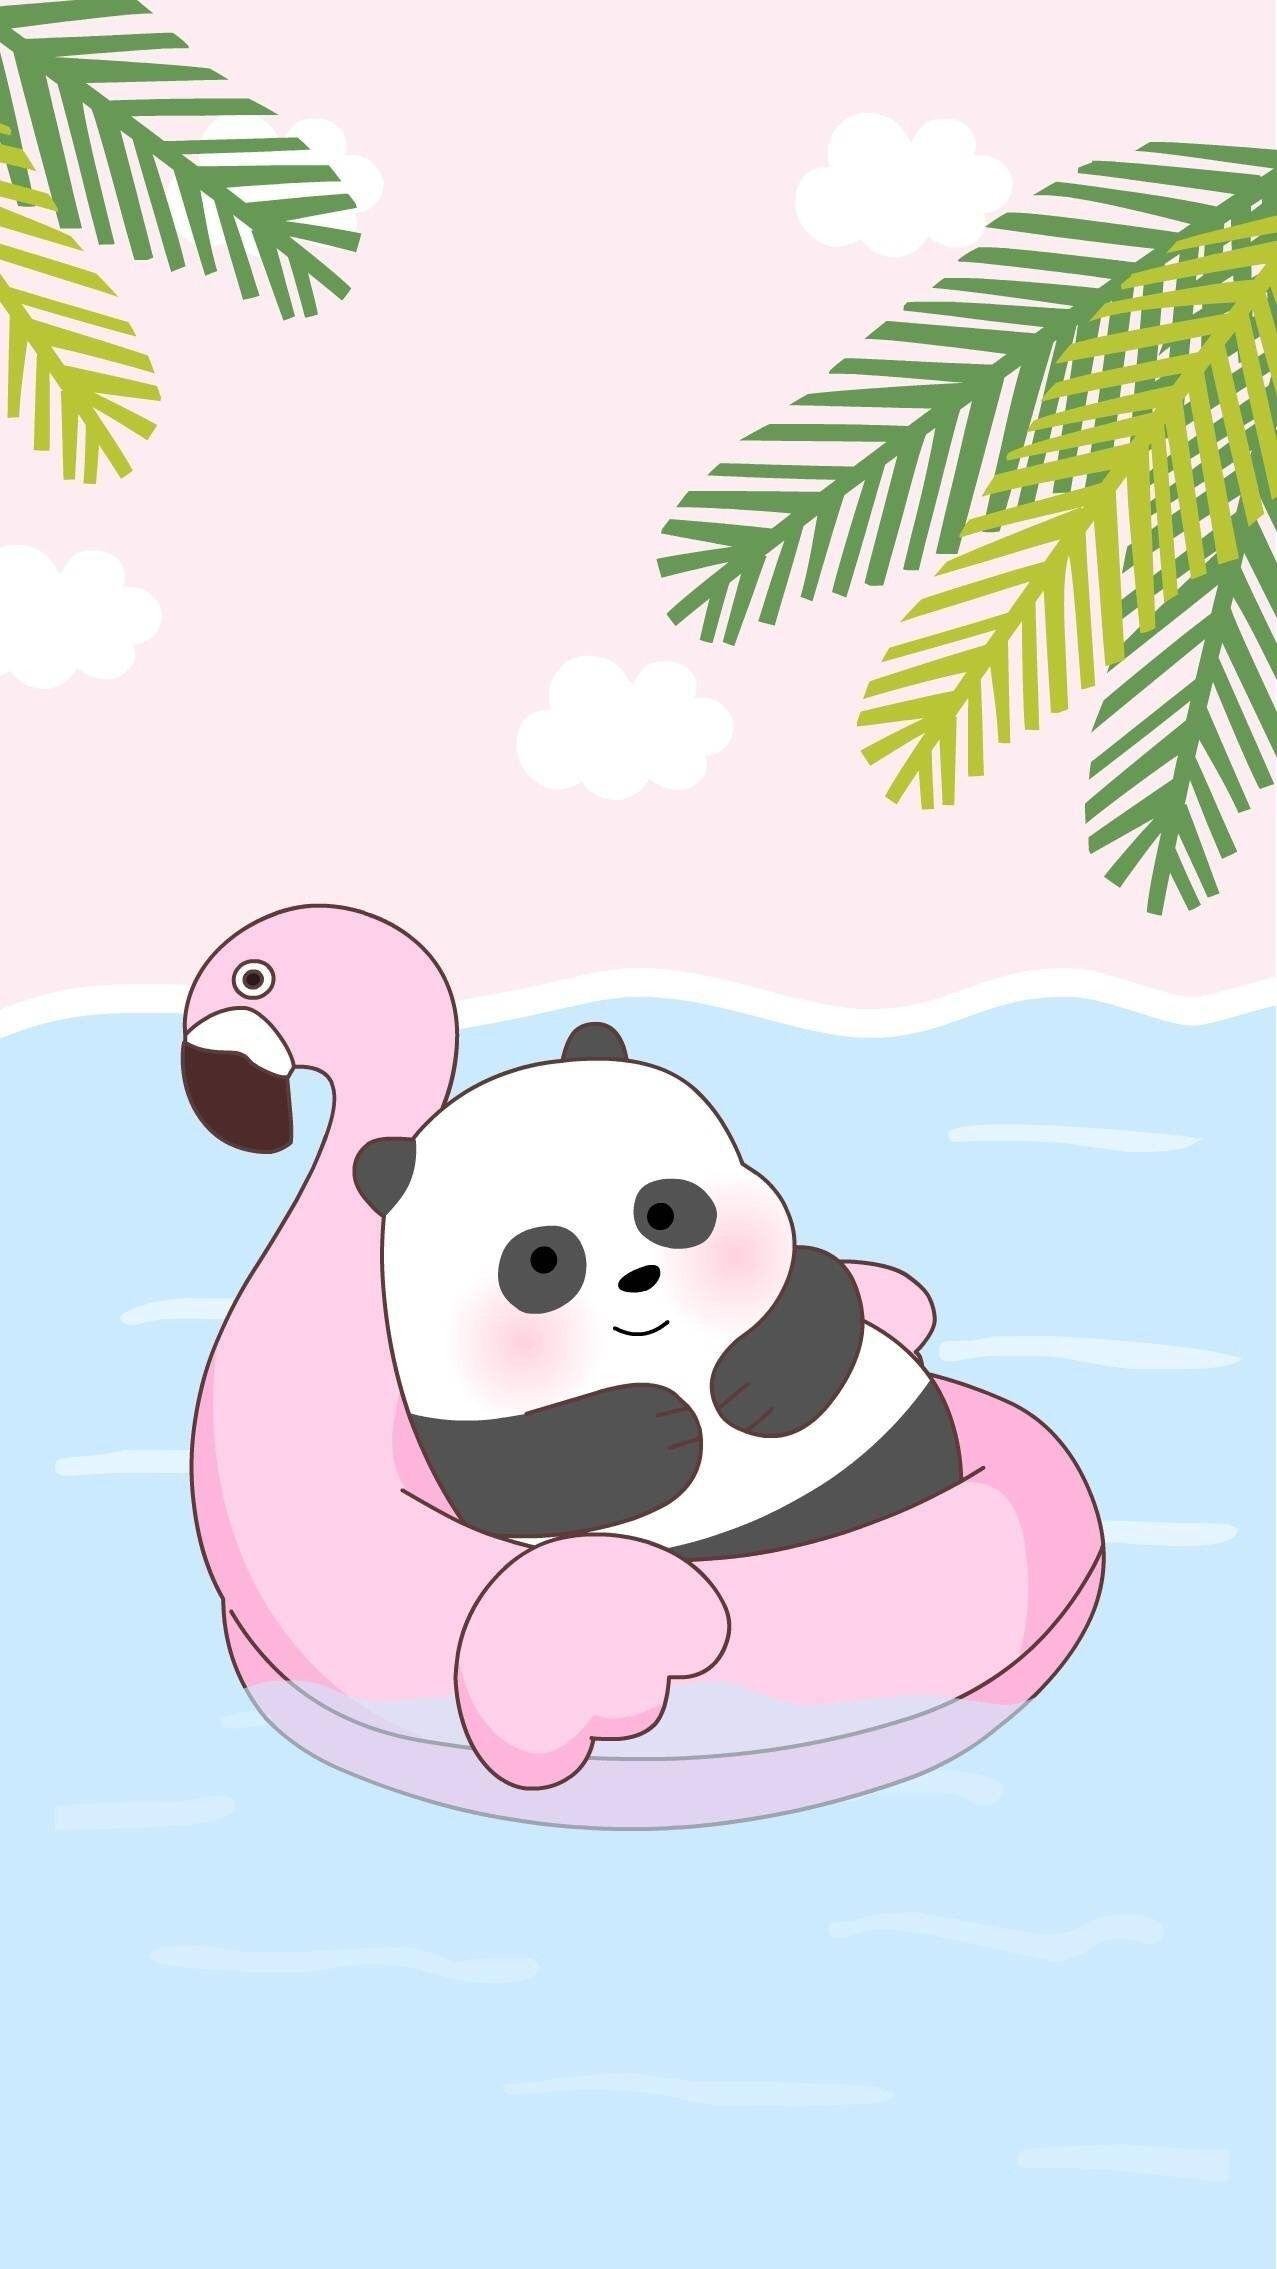 Free download Panda cute Panda wallpapers Cute galaxy wallpaper Cute panda  [720x1280] for your Desktop, Mobile & Tablet | Explore 30+ Pandas Wallpaper  | Baby Pandas Wallpaper, Wallpapers of Pandas, Cute Wallpapers of Pandas